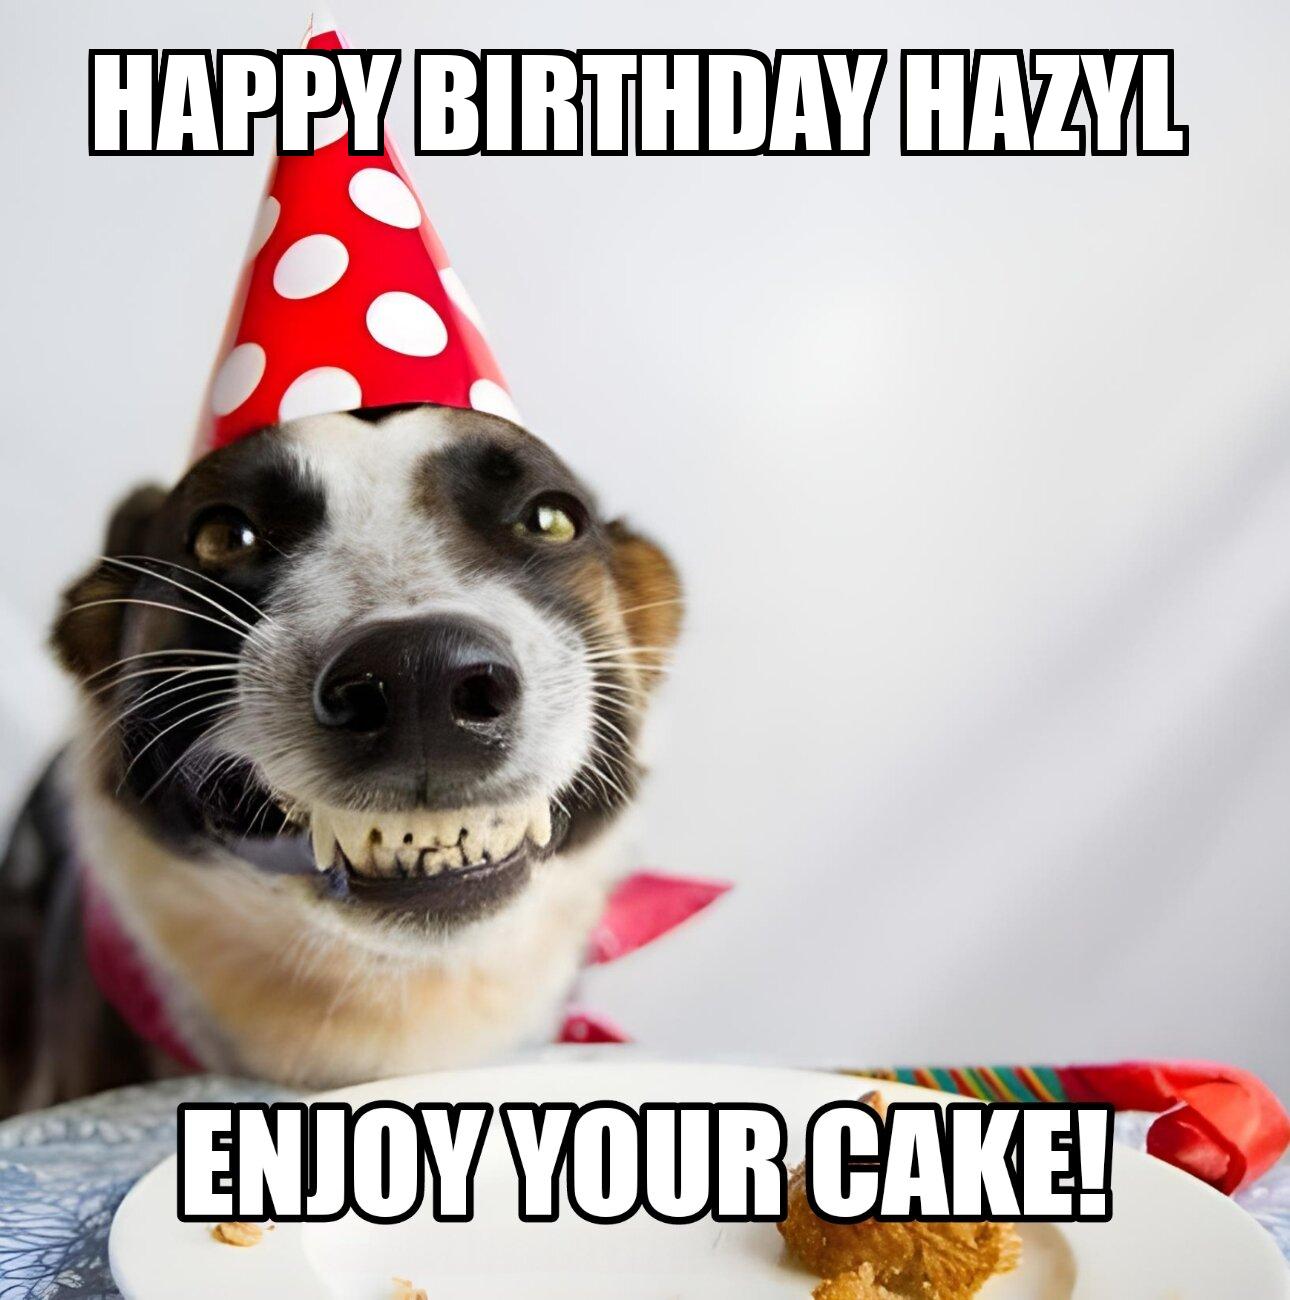 Happy Birthday Hazyl Enjoy Your Cake Dog Meme